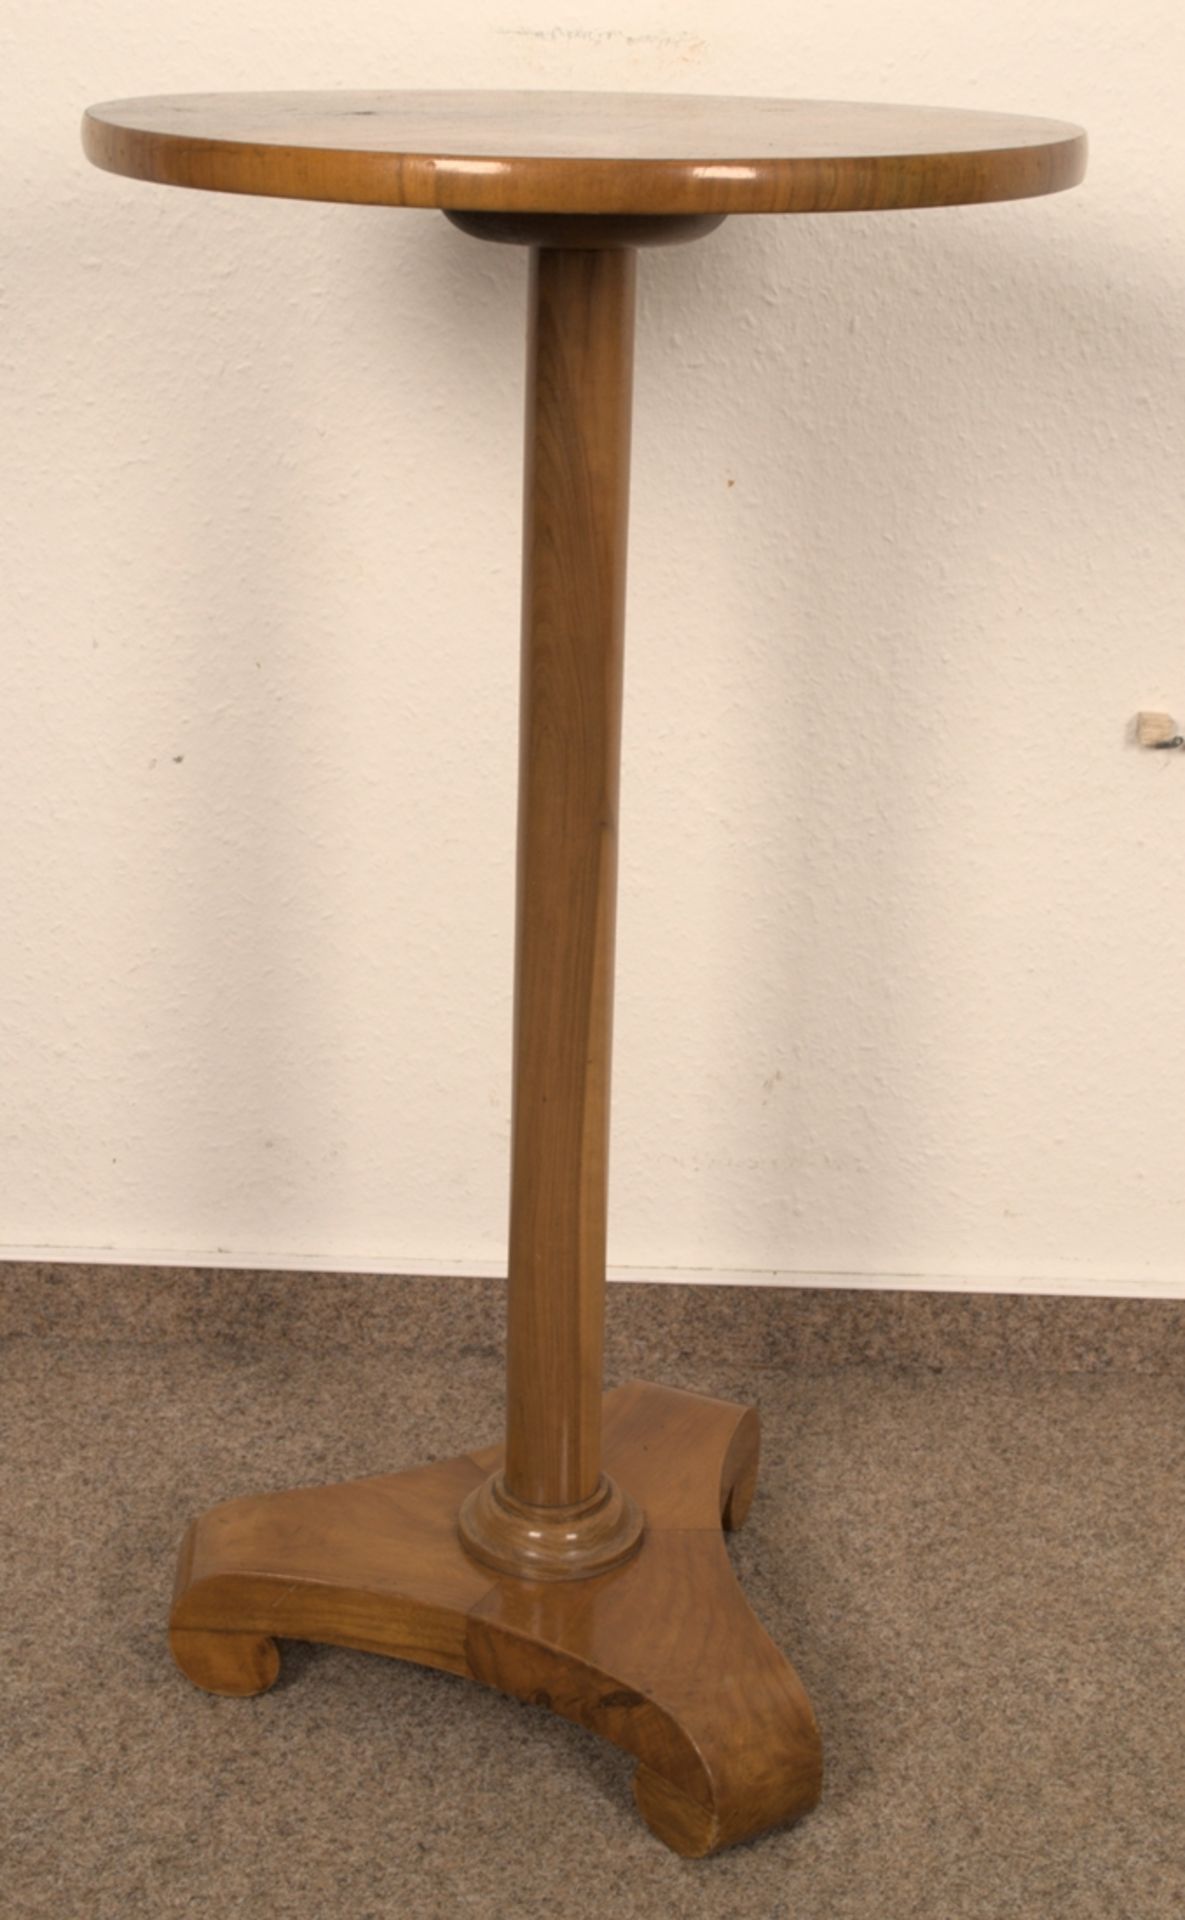 Rundes Lampentischchen, Biedermeier-Stil 19./20. Jhd., Höhe ca. 75 cm, Durchmesser ca. 42 cm. - Bild 2 aus 5